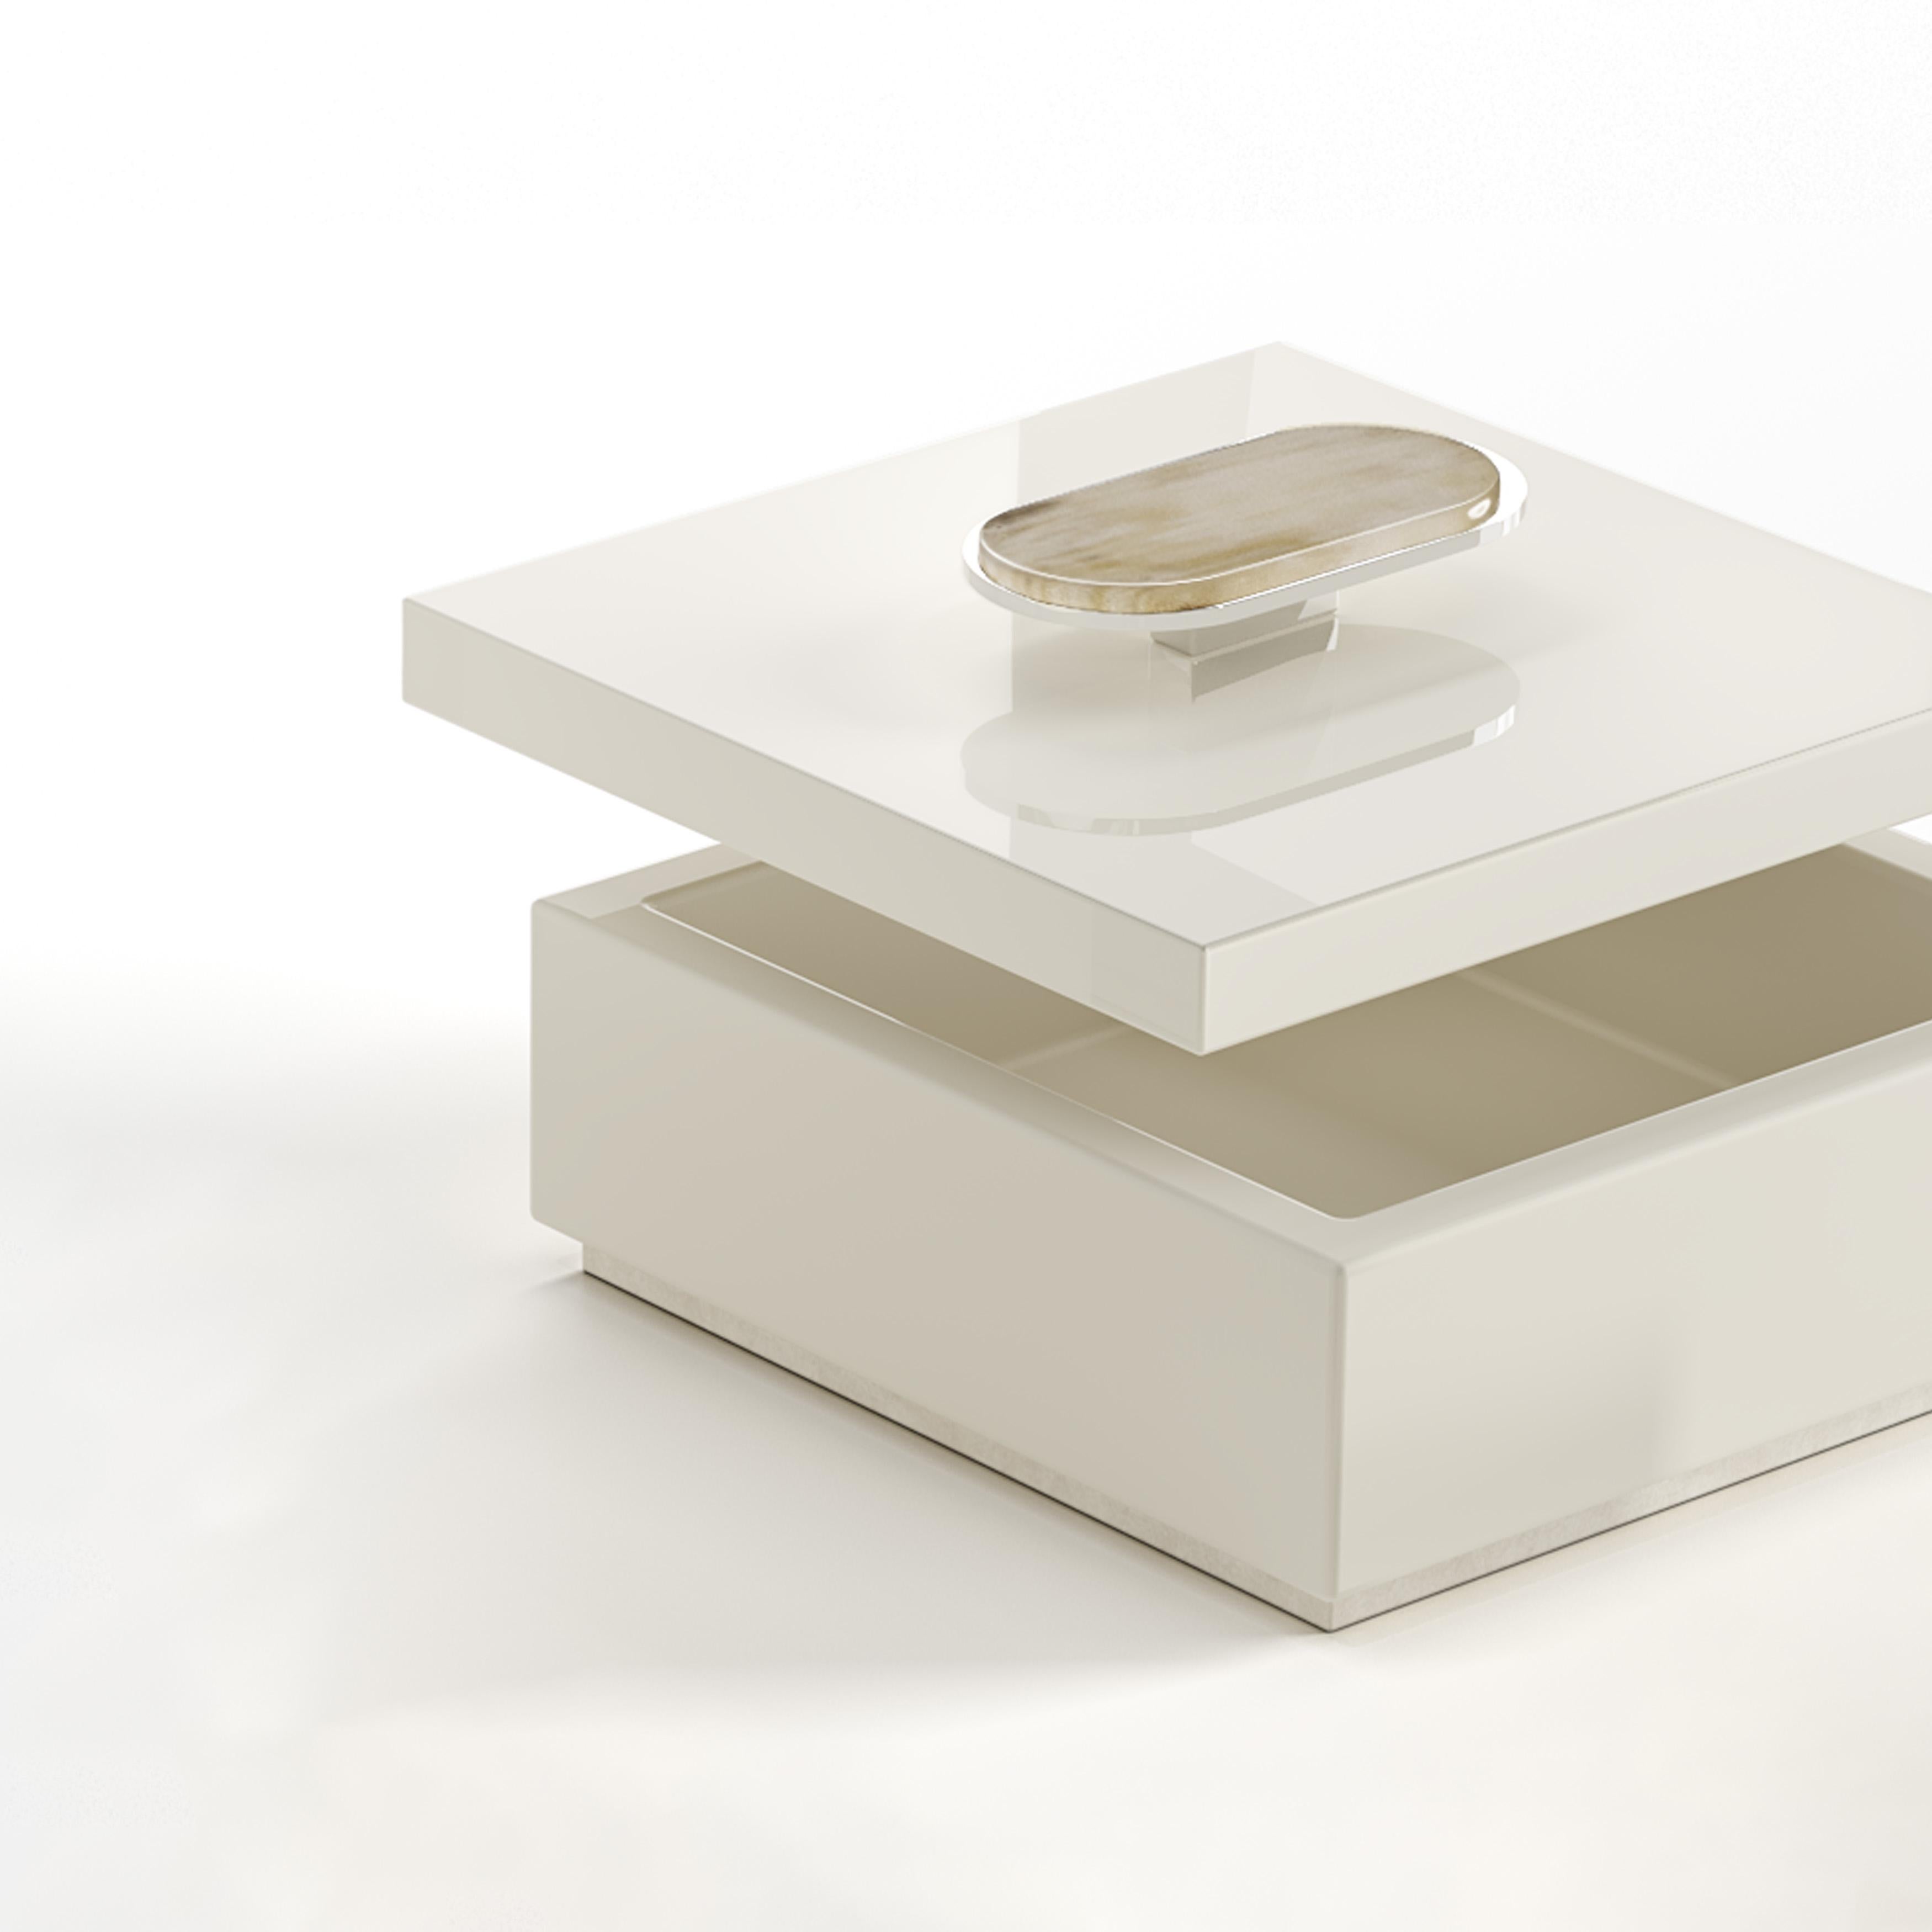 Die Priora-Box ist ein vielseitiges und elegantes Accessoire, in dem Sie Ihre wertvollen Gegenstände sorgfältig aufbewahren können. Das aus glänzend elfenbeinfarben lackiertem Holz gefertigte Kästchen zeichnet sich durch die Details in Corno